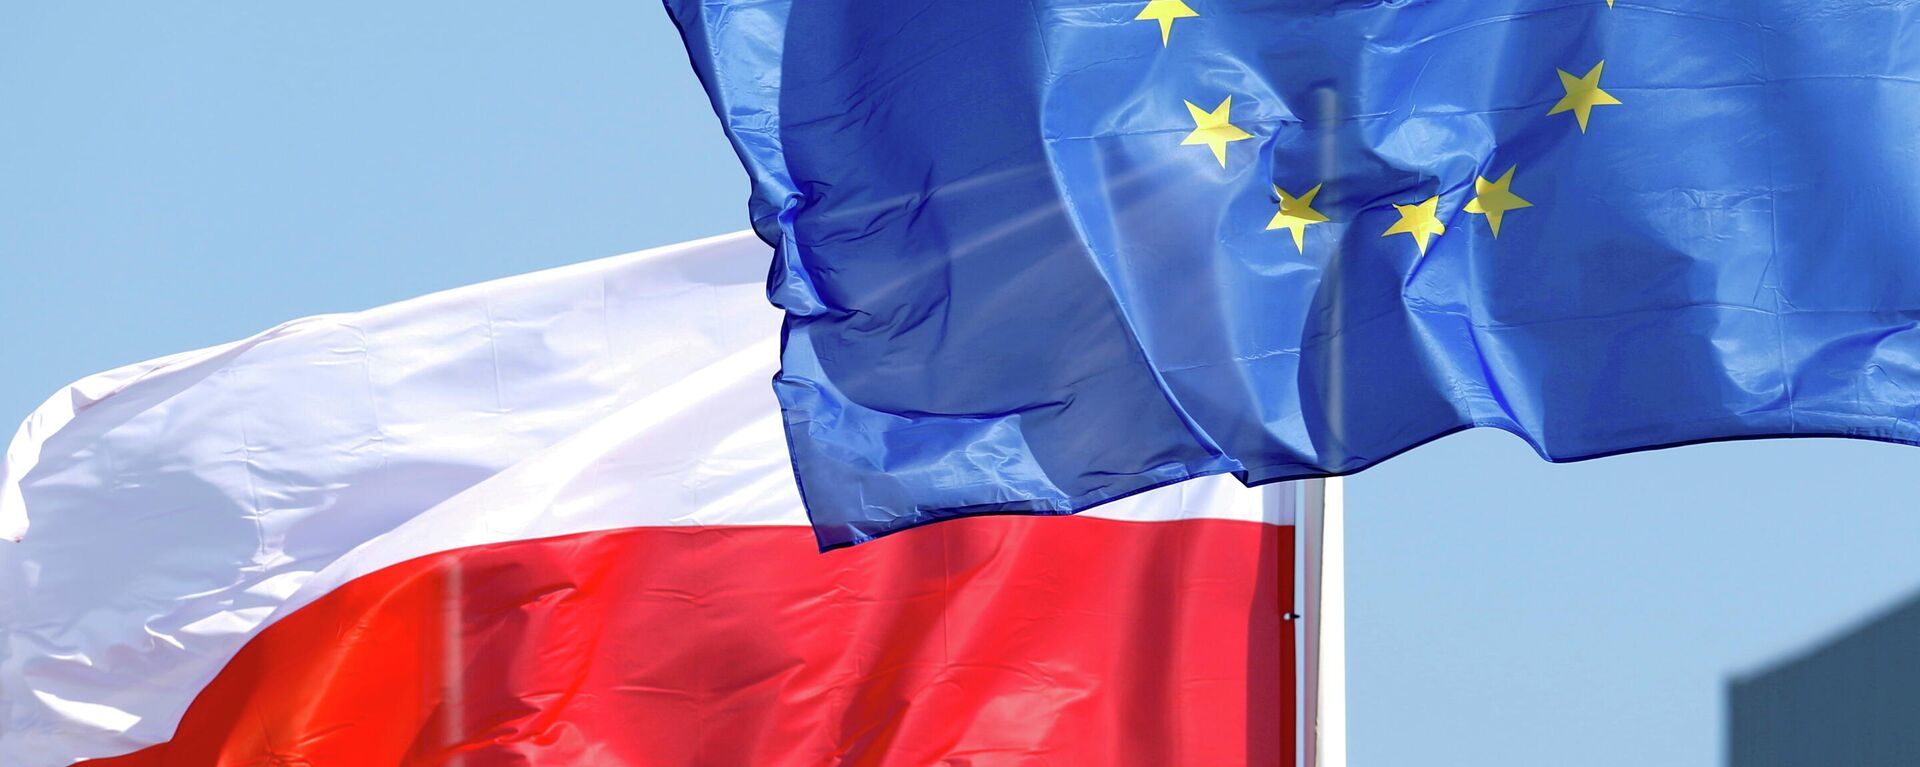 Banderas de Polonia y la UE - Sputnik Mundo, 1920, 08.10.2021